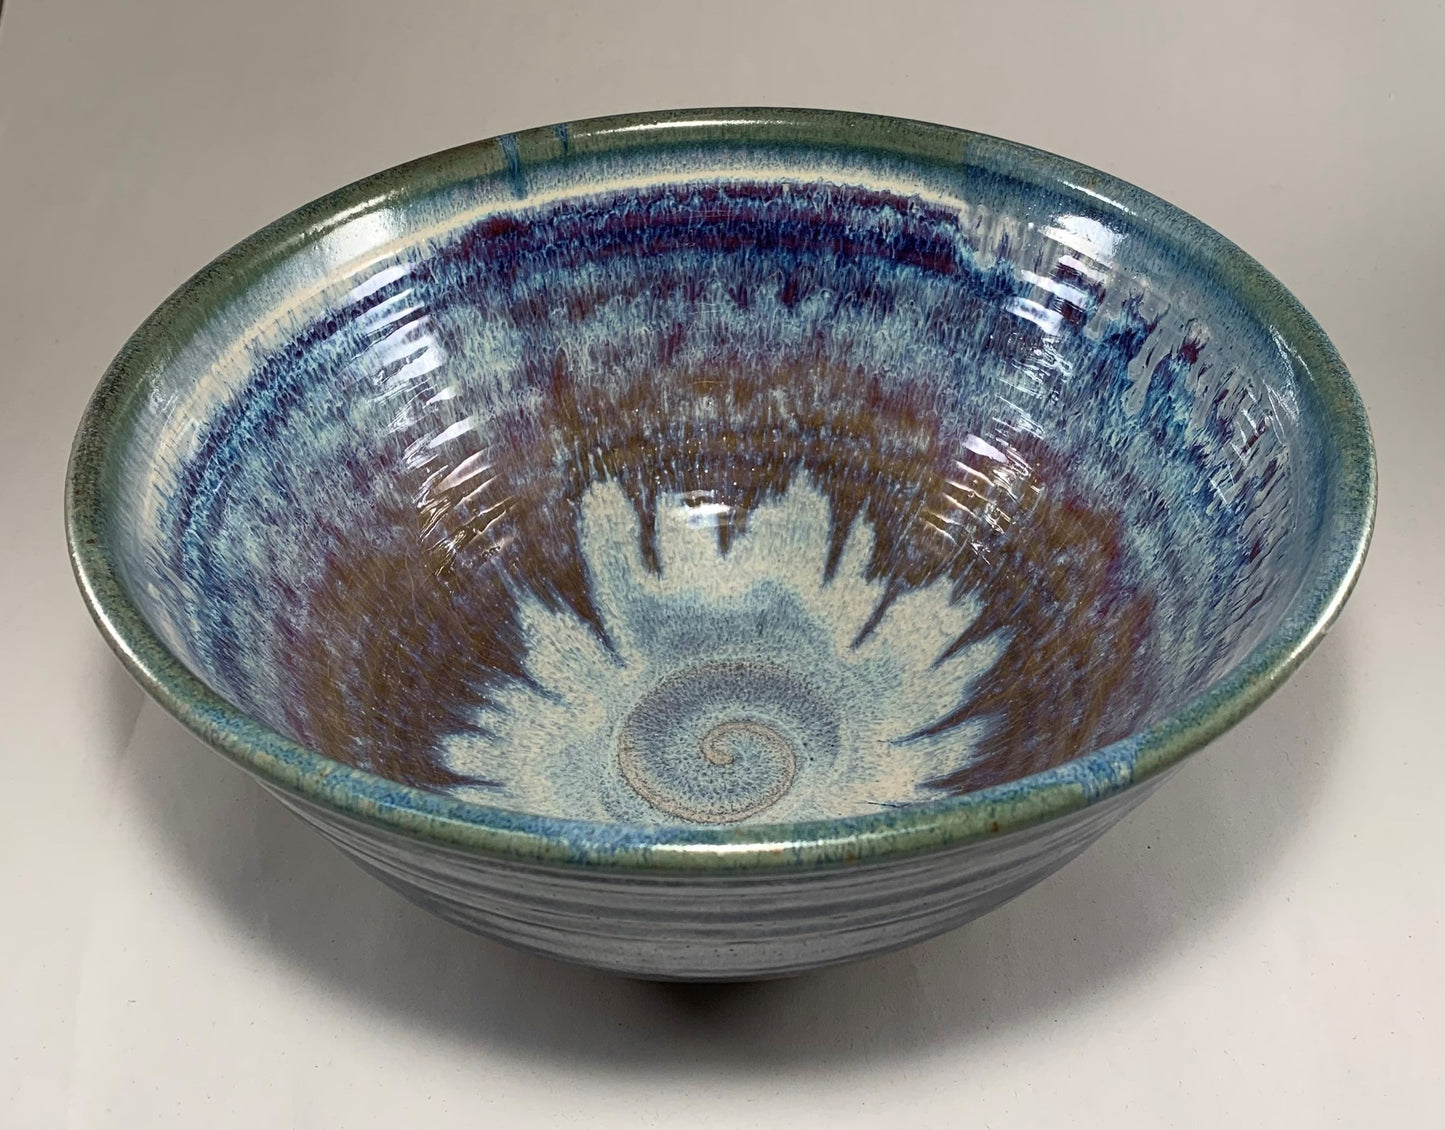 Handmade pottery mixing bowl. I’m